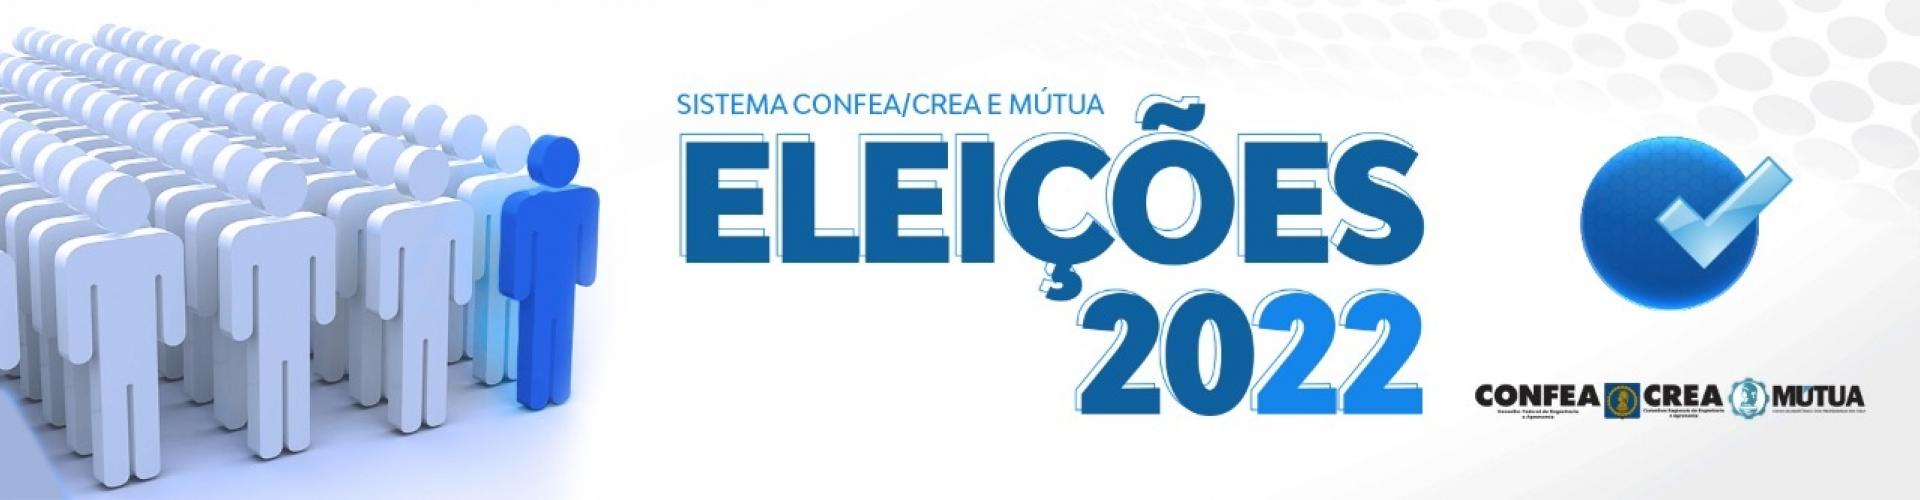 Banner que remete à página do processo eleitoral de 2022